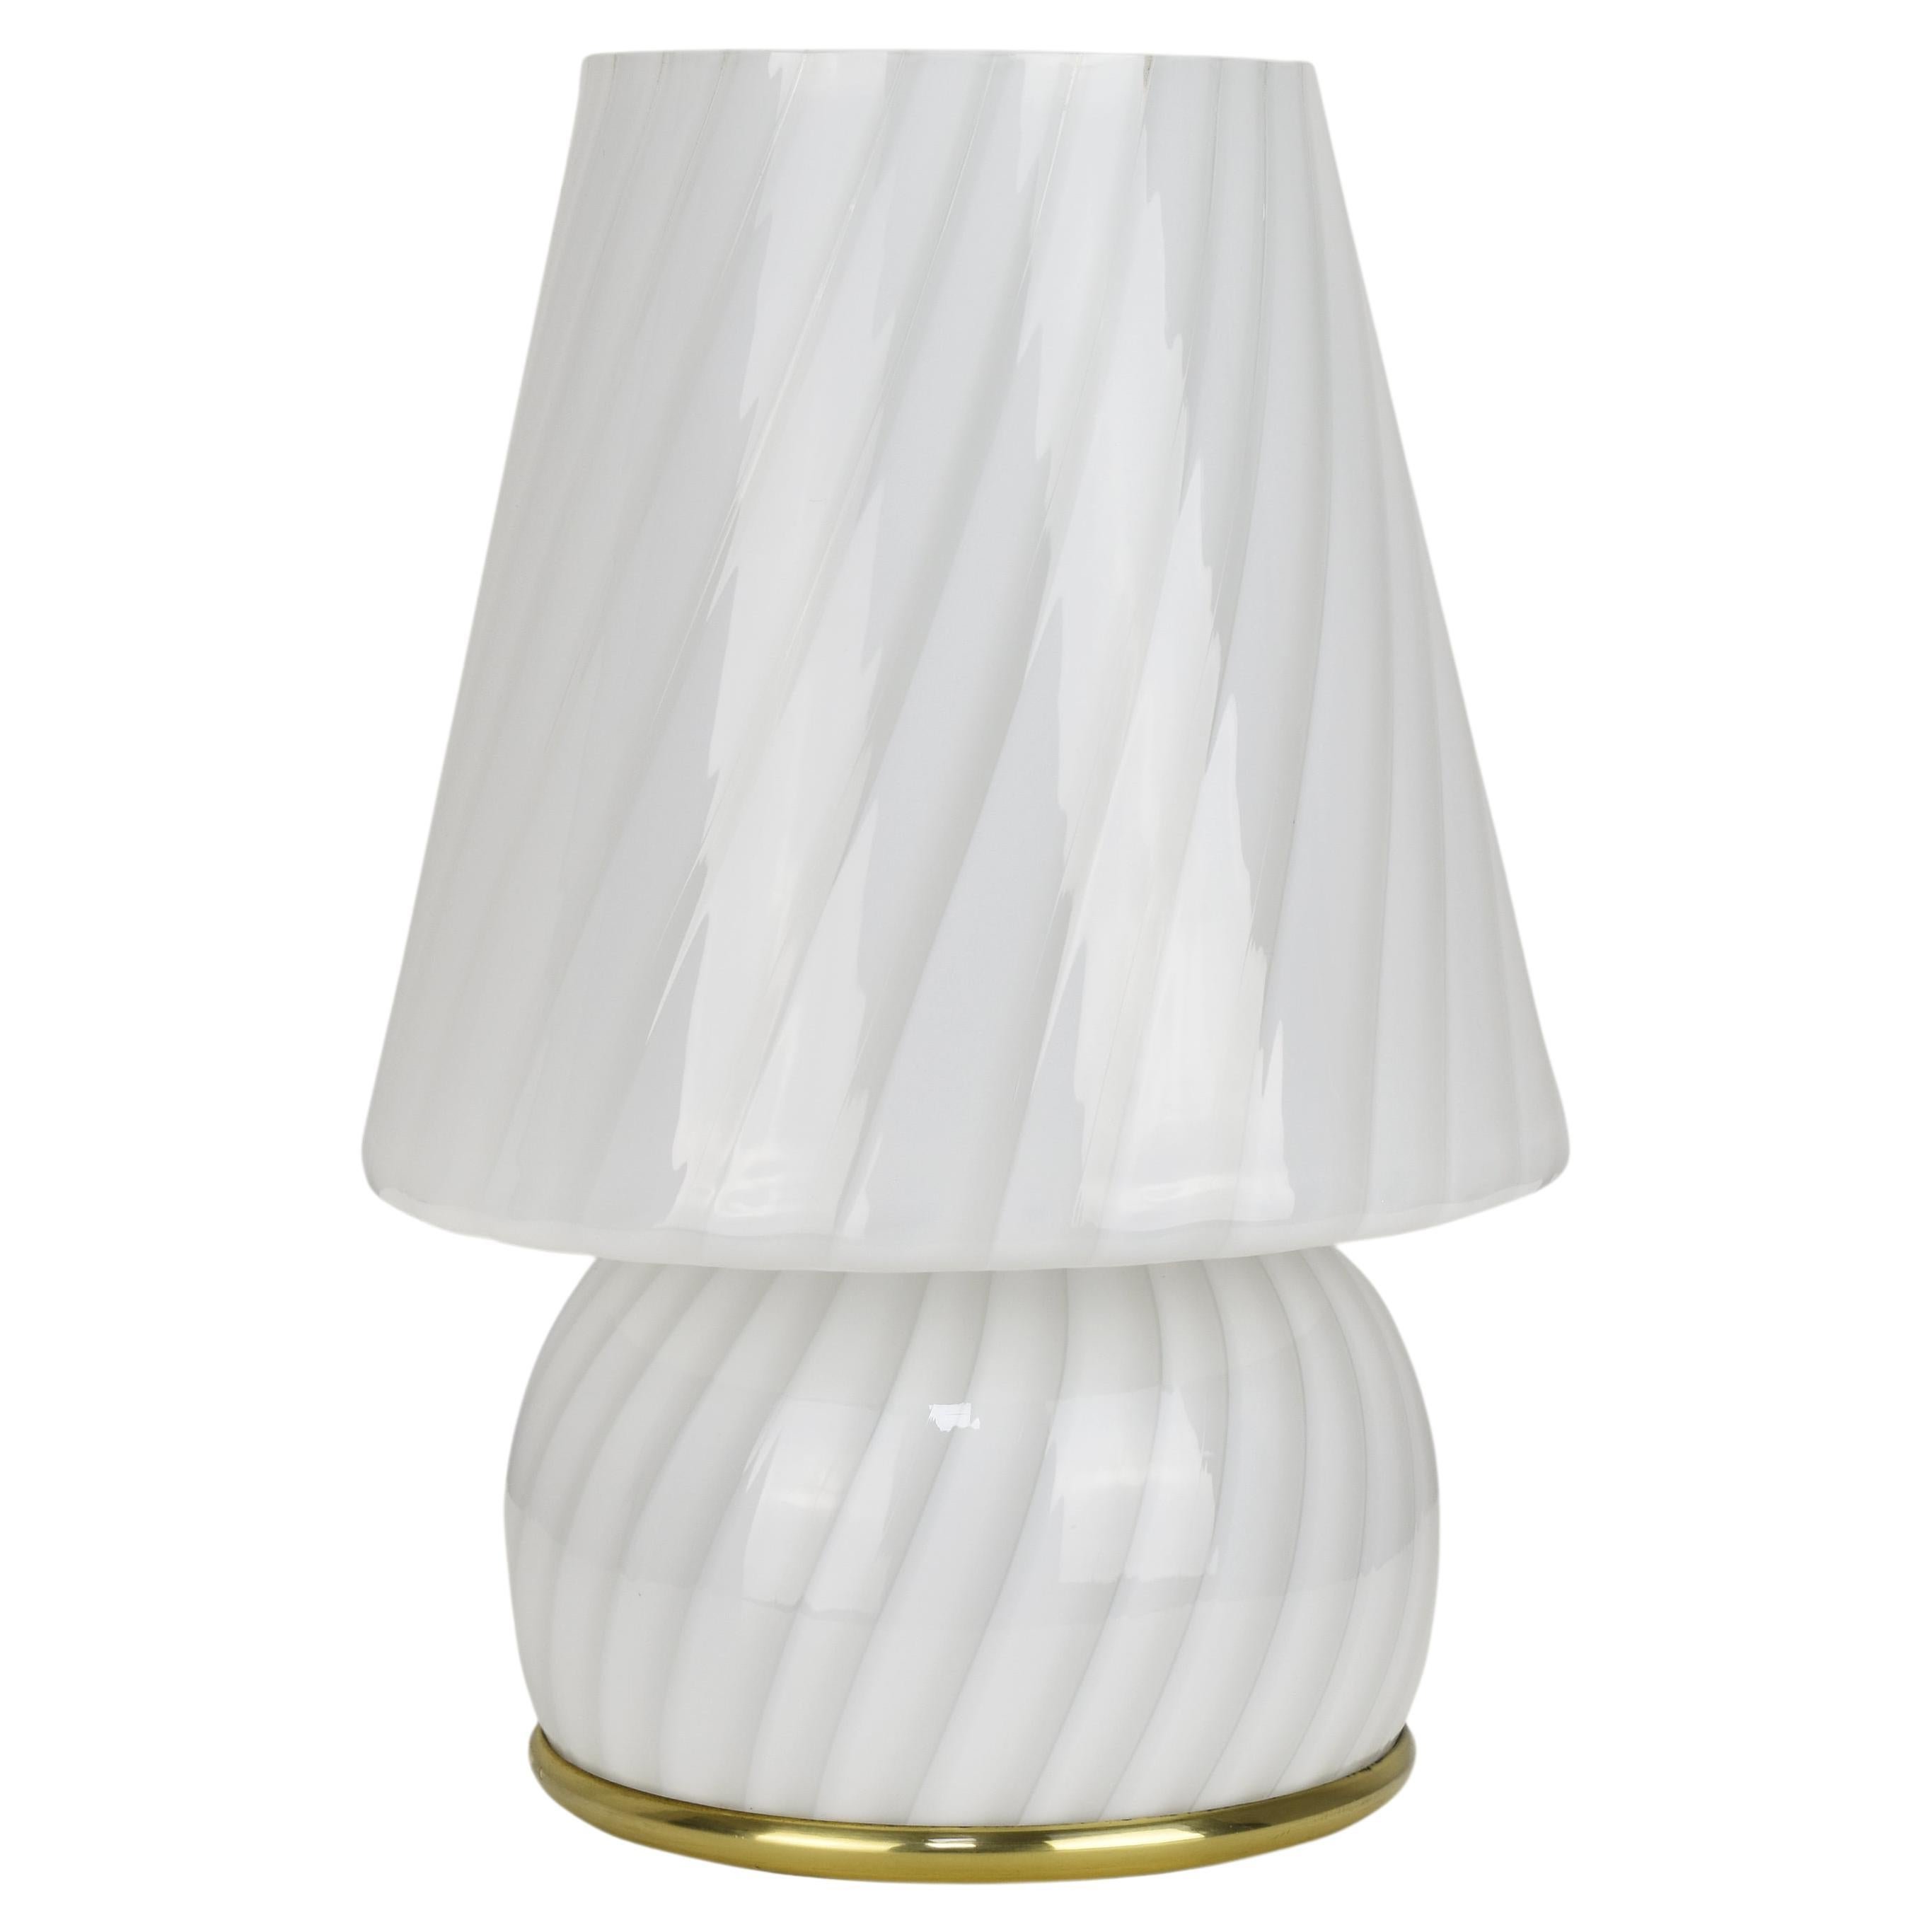 Midcentury White Murano Glass and Brass Italian Mushroom-Shaped Table Lamp 1960s